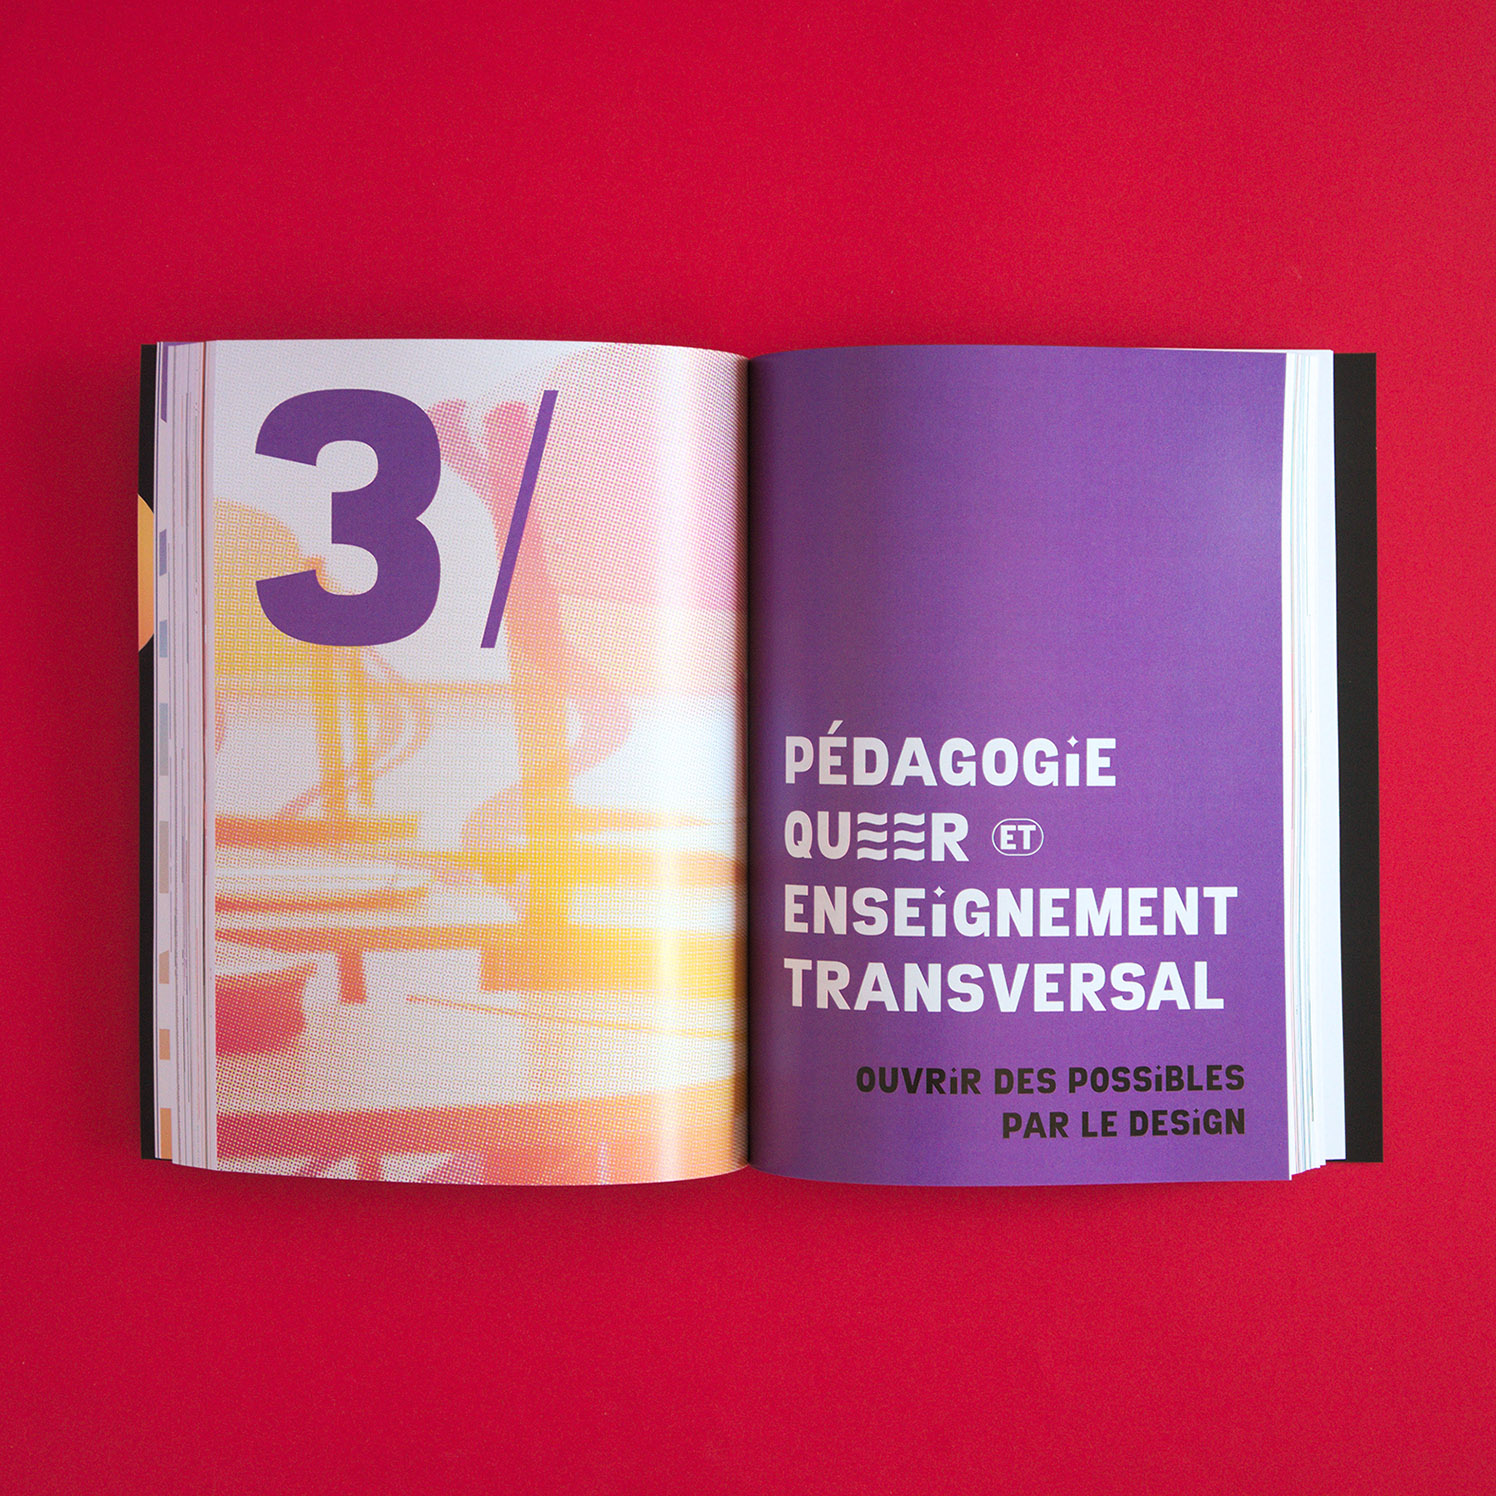 MÃ©moire Design pour une pÃ©dagogie queer (Anna Pavie) : double-page du troisiÃ¨me chapitre "PÃ©dagogie queer et enseignement transversal : ouvrir les possibles par le design"